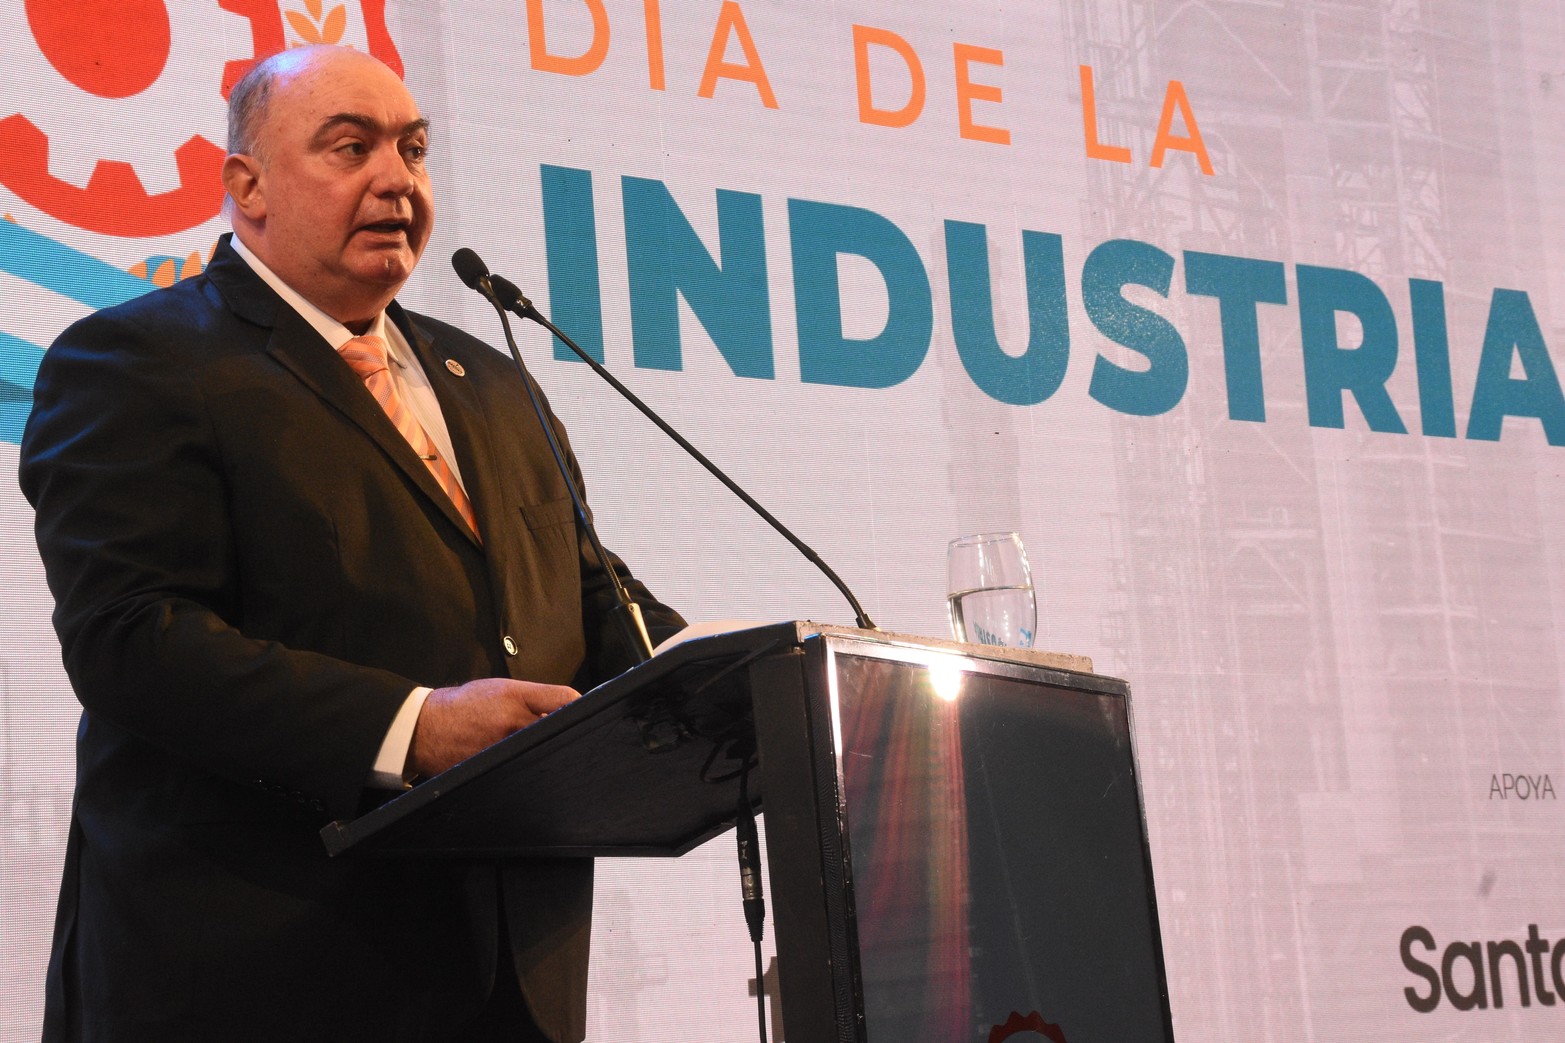 Javier Martín, presidente de FISFE, dirigió unas palabras en las que subrayó la trascendental relevancia de la industria en la construcción de una soberanía sólida y próspera para nuestra nación.